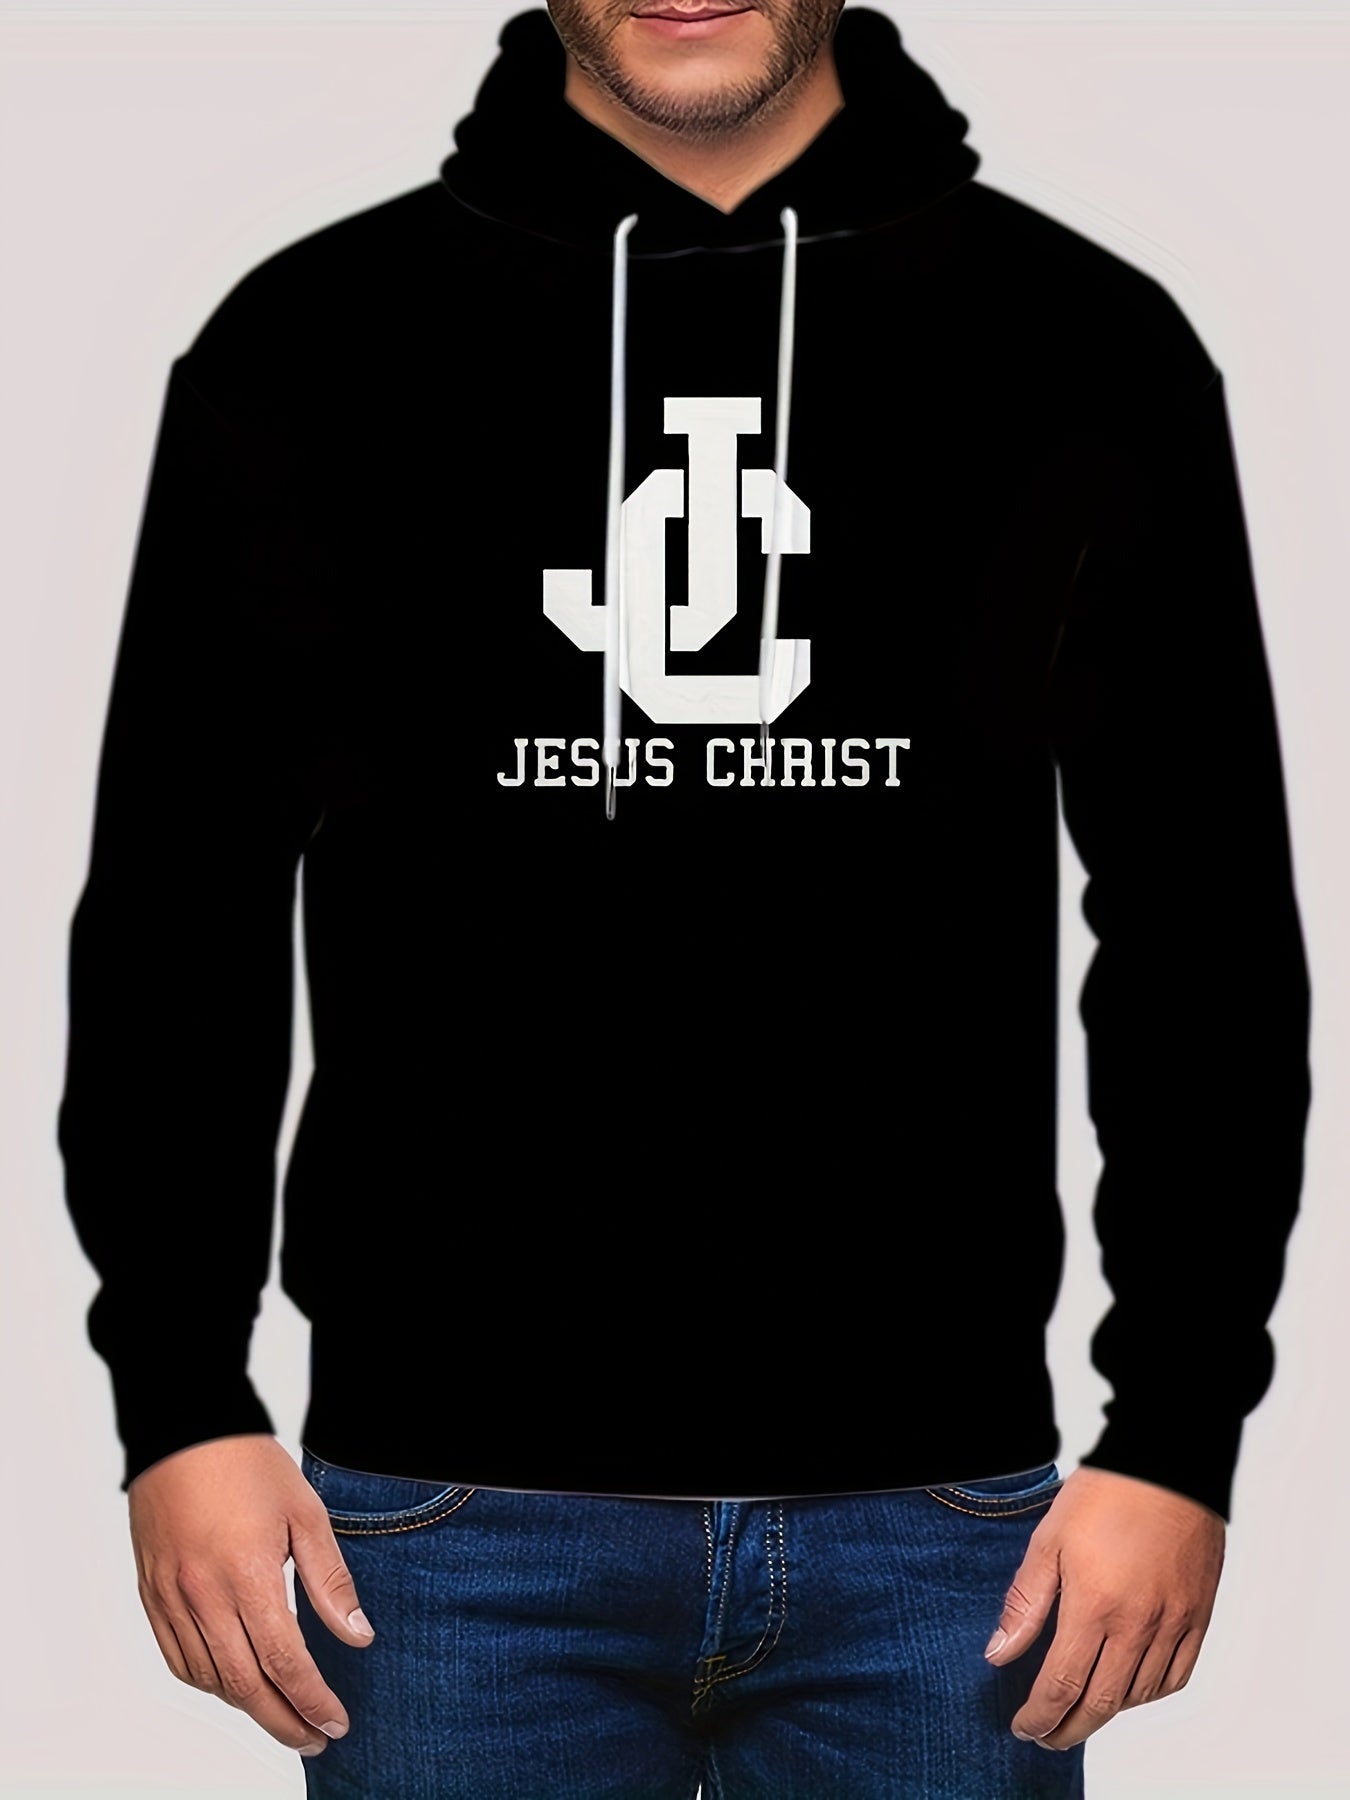 Jesus Christ Men's Christian Pullover Hooded Sweatshirt claimedbygoddesigns